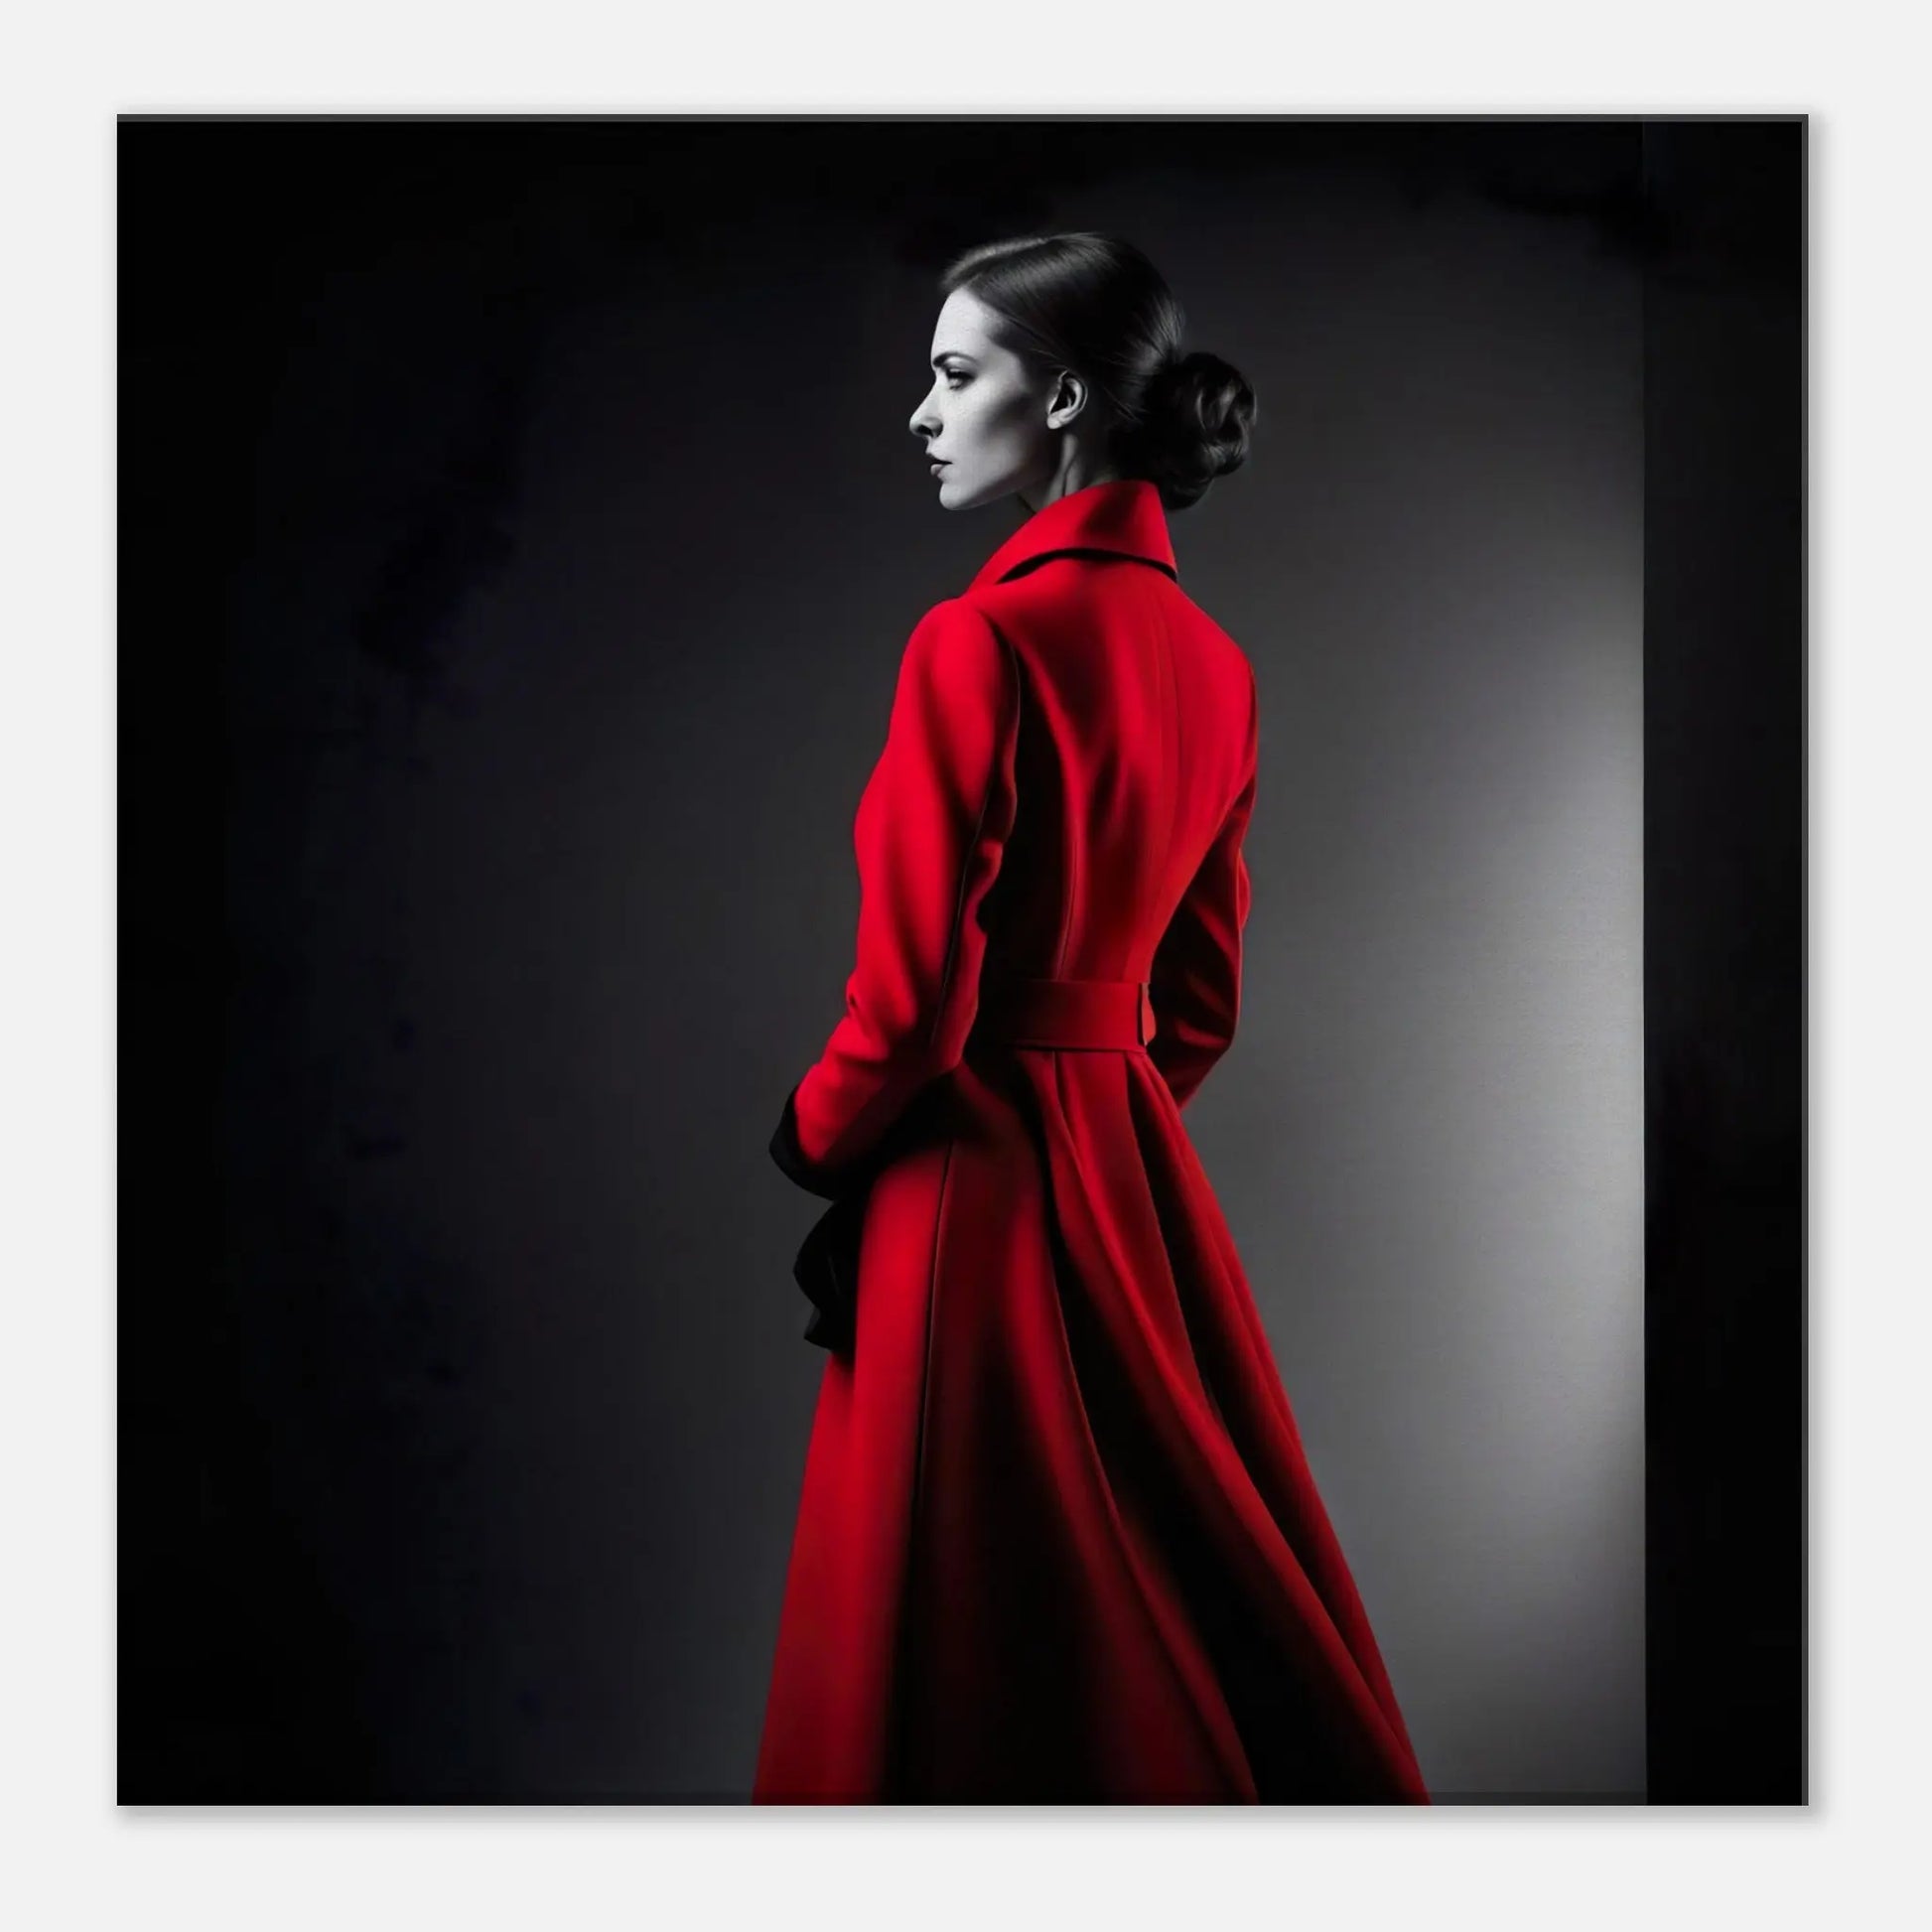 Leinwandbild - Frau im roten Mantel - Schwarz-Weiß Stil, KI-Kunst - RolConArt, Schwarz-Weiß mit Akzentfarben, 40x40-cm-16x16